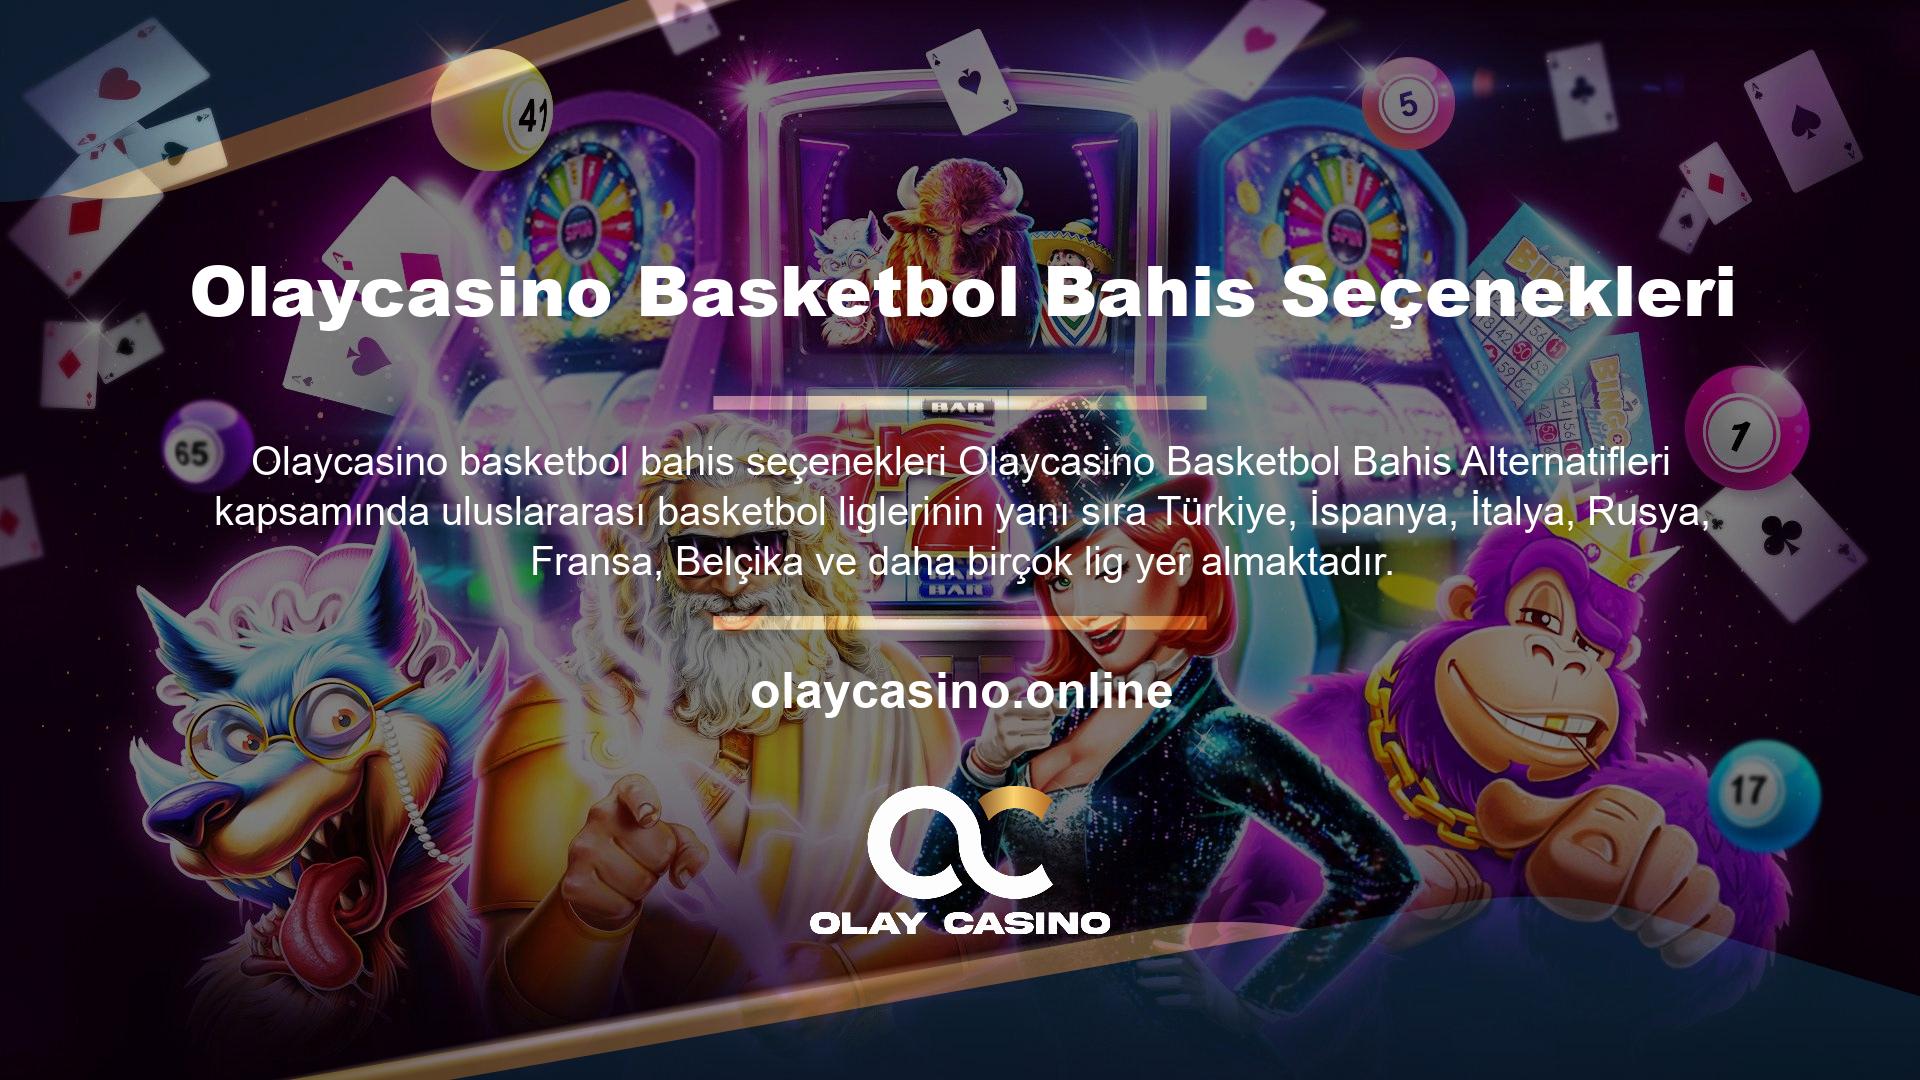 Basketbol söz konusu olduğunda NBA için çok özel bir menüsü olan Olaycasino adı dünyanın bir numarası